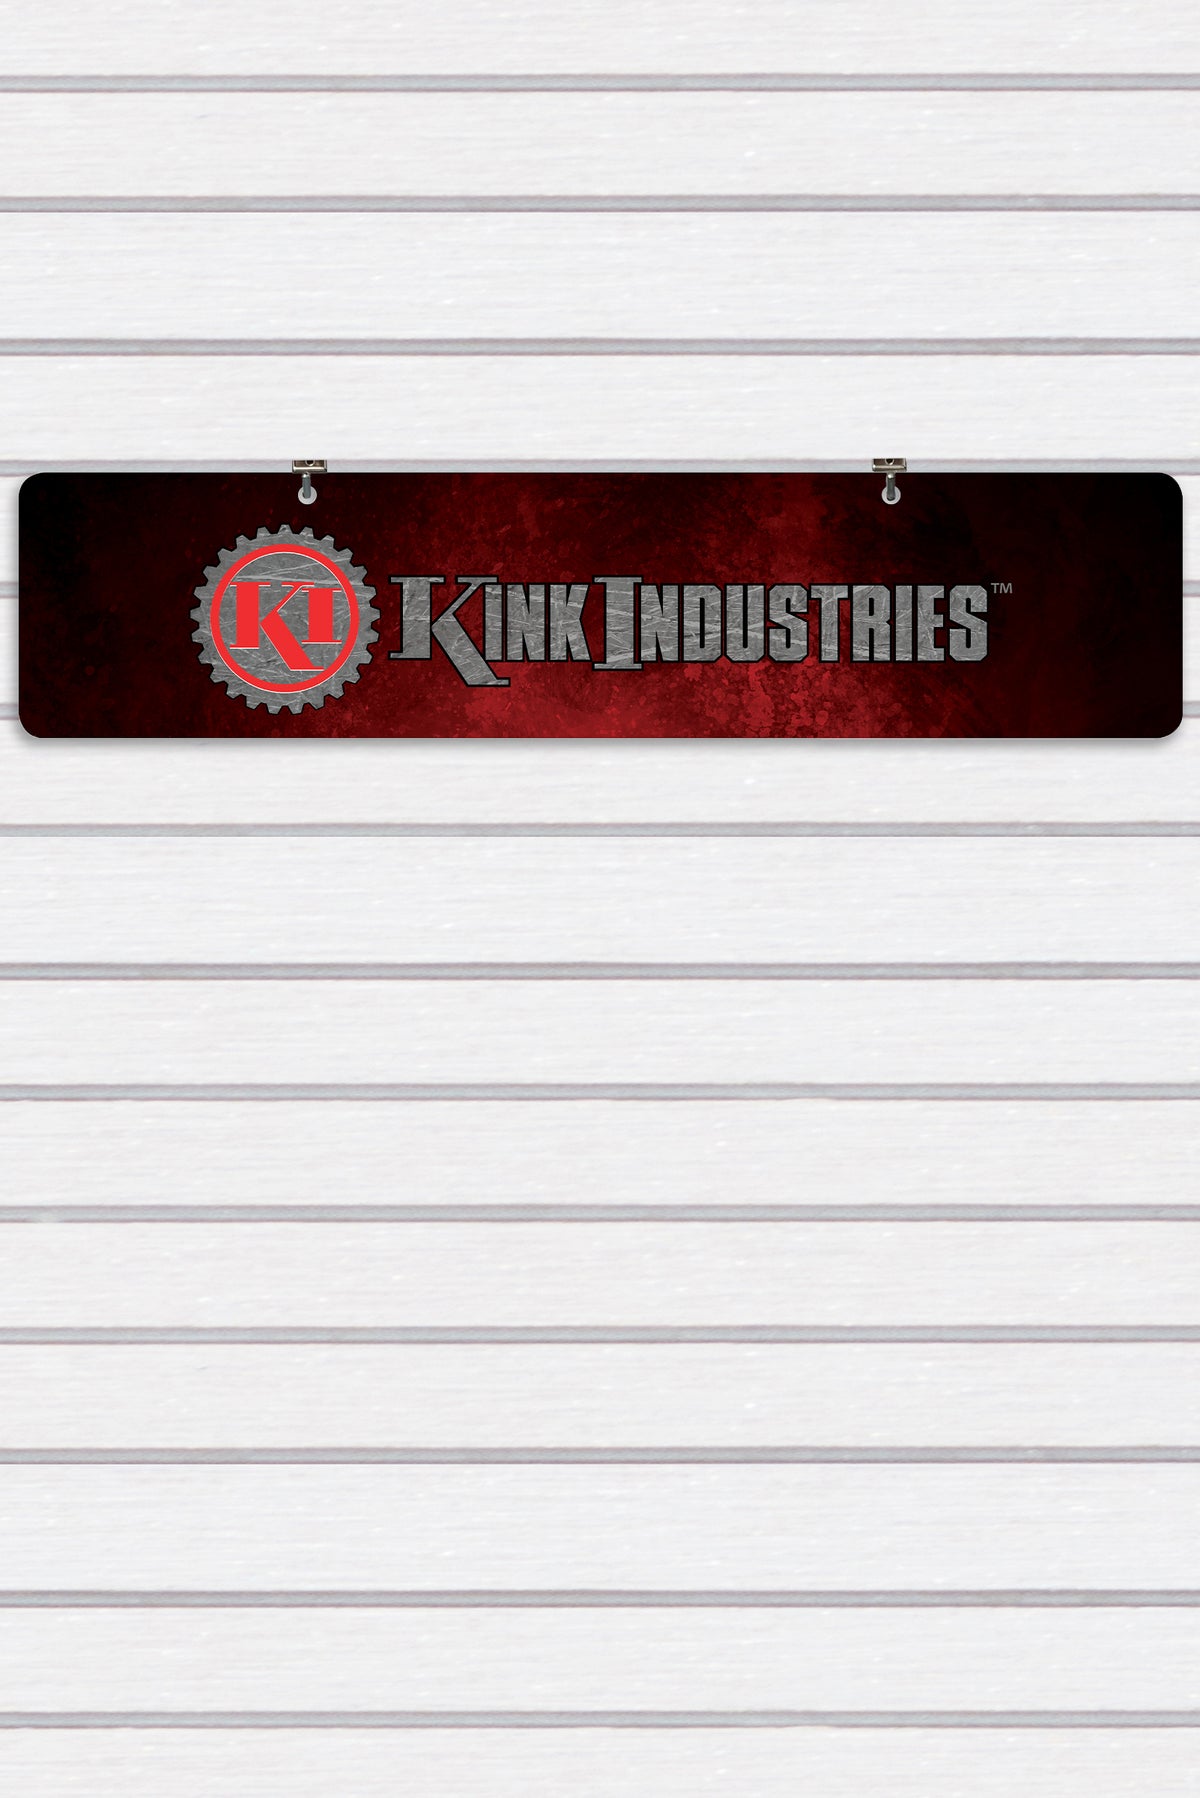 Kink Industries Display Sign